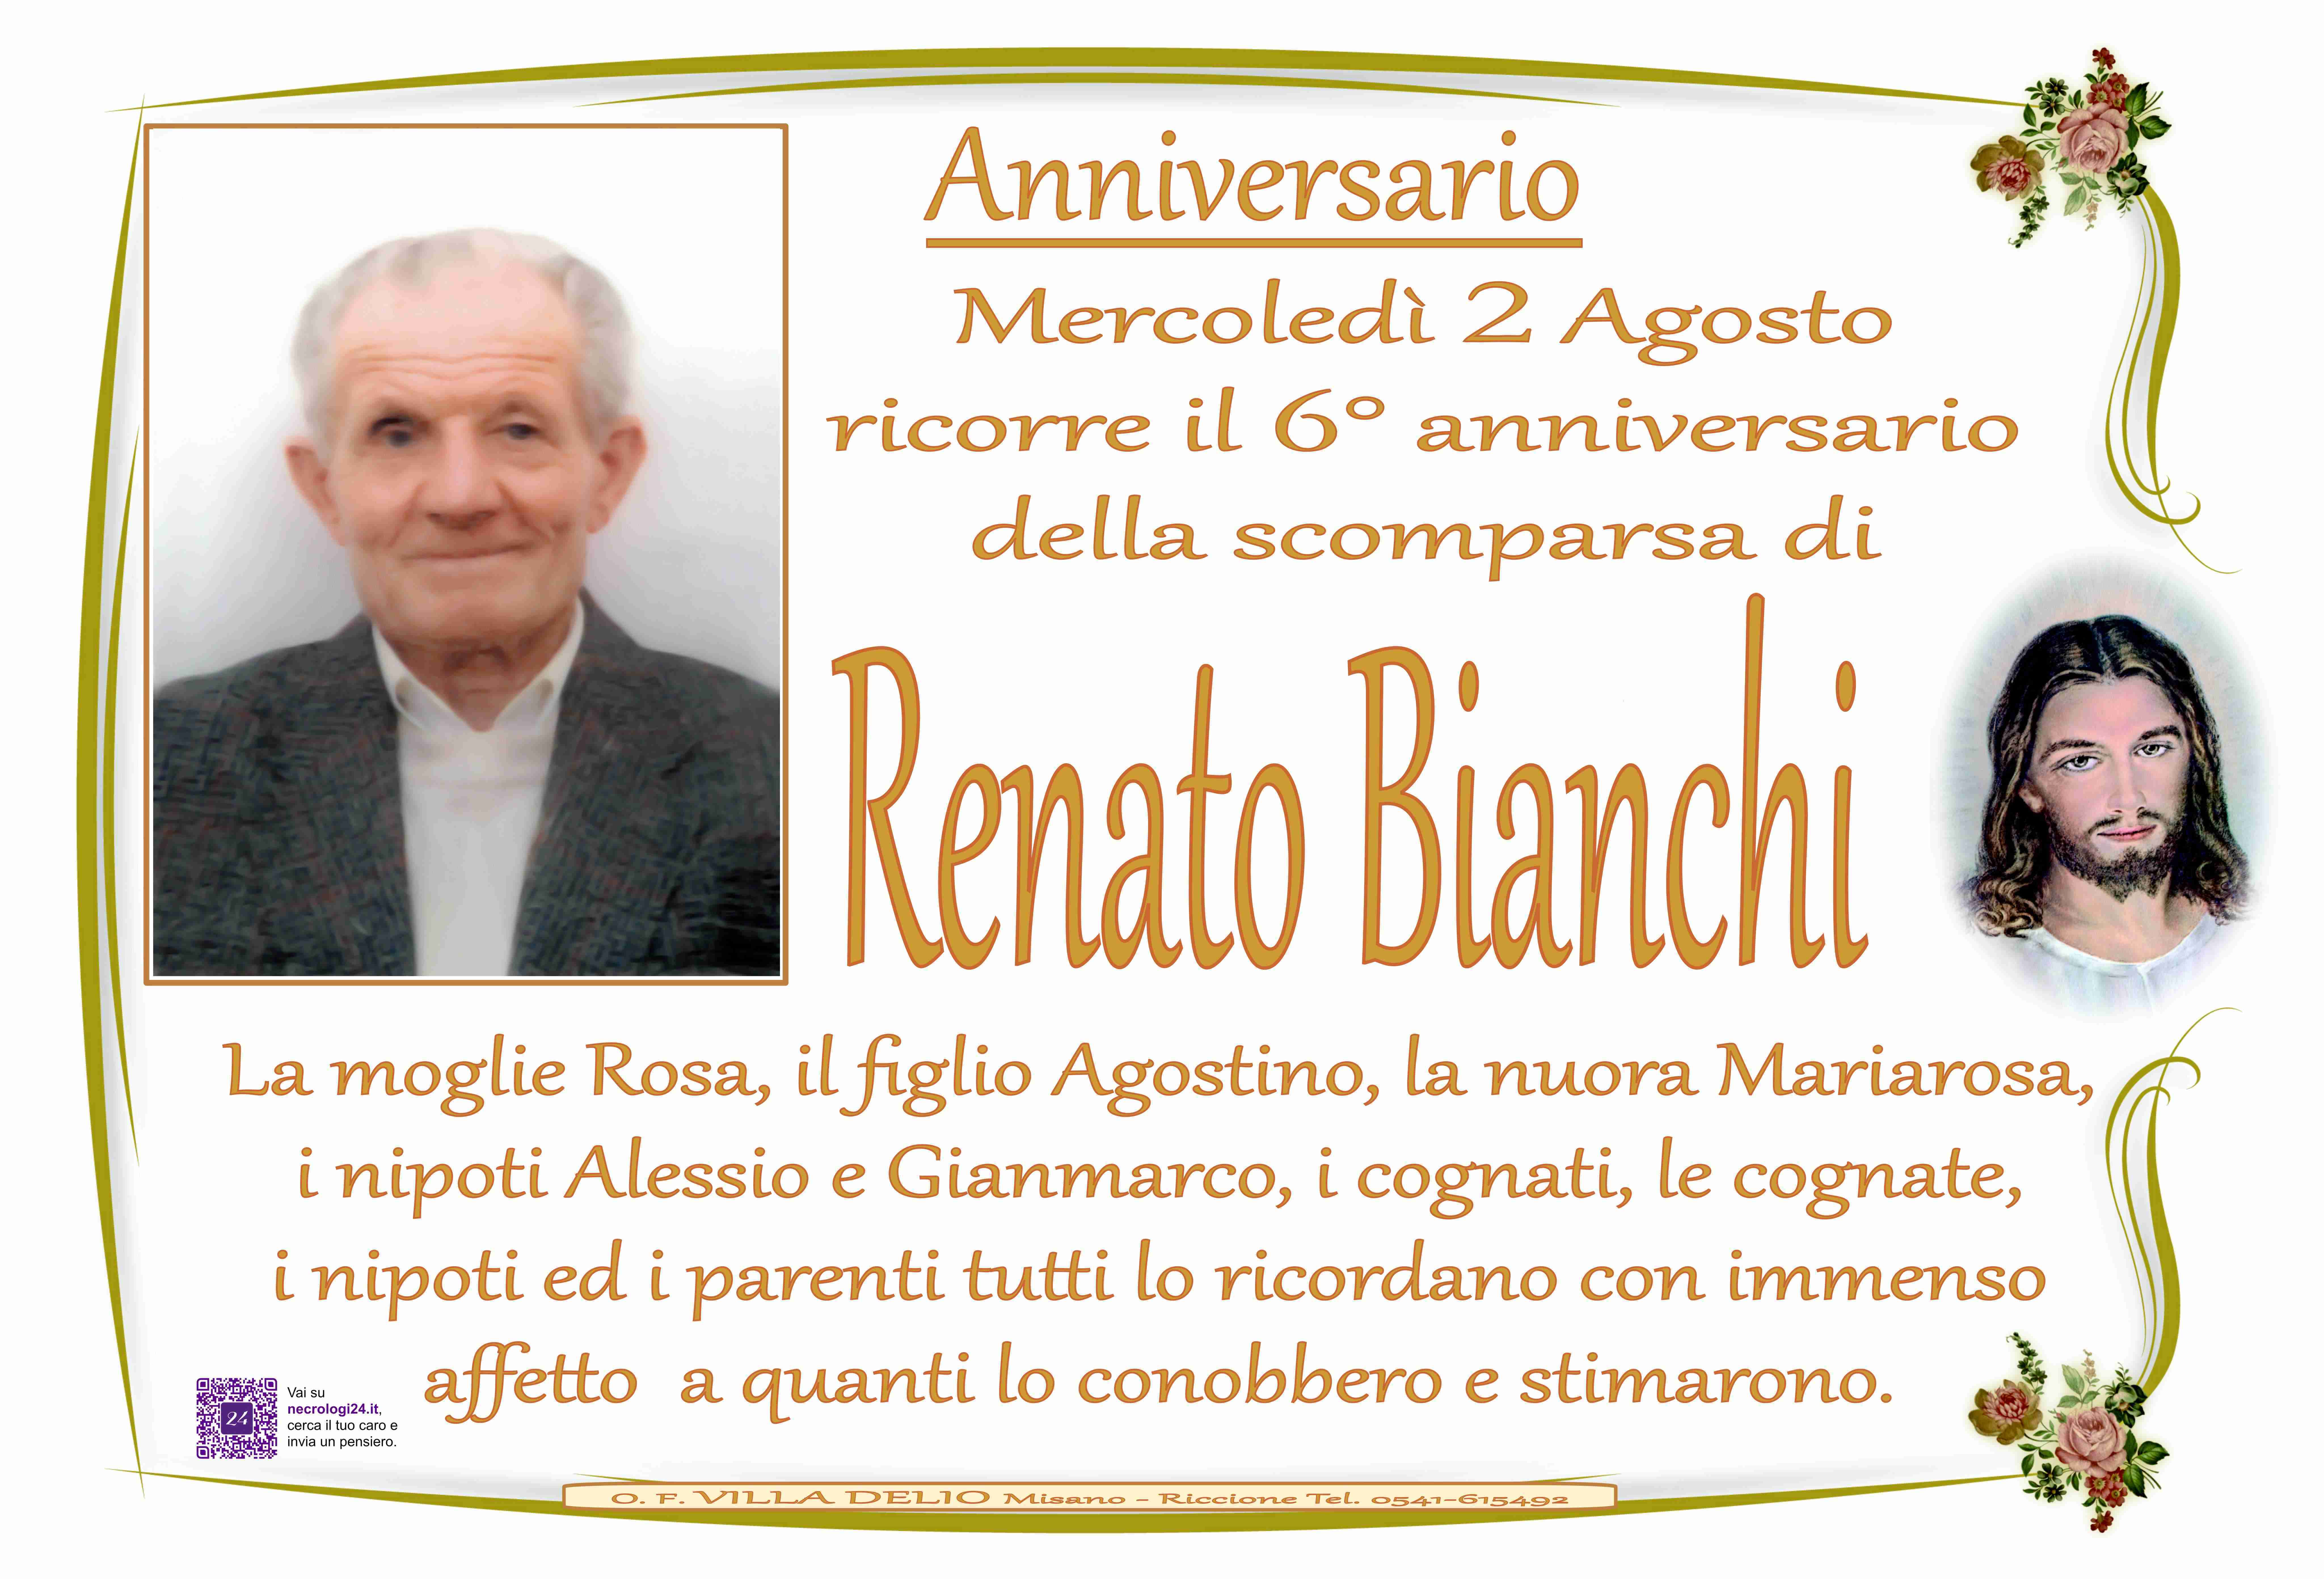 Renato Bianchi